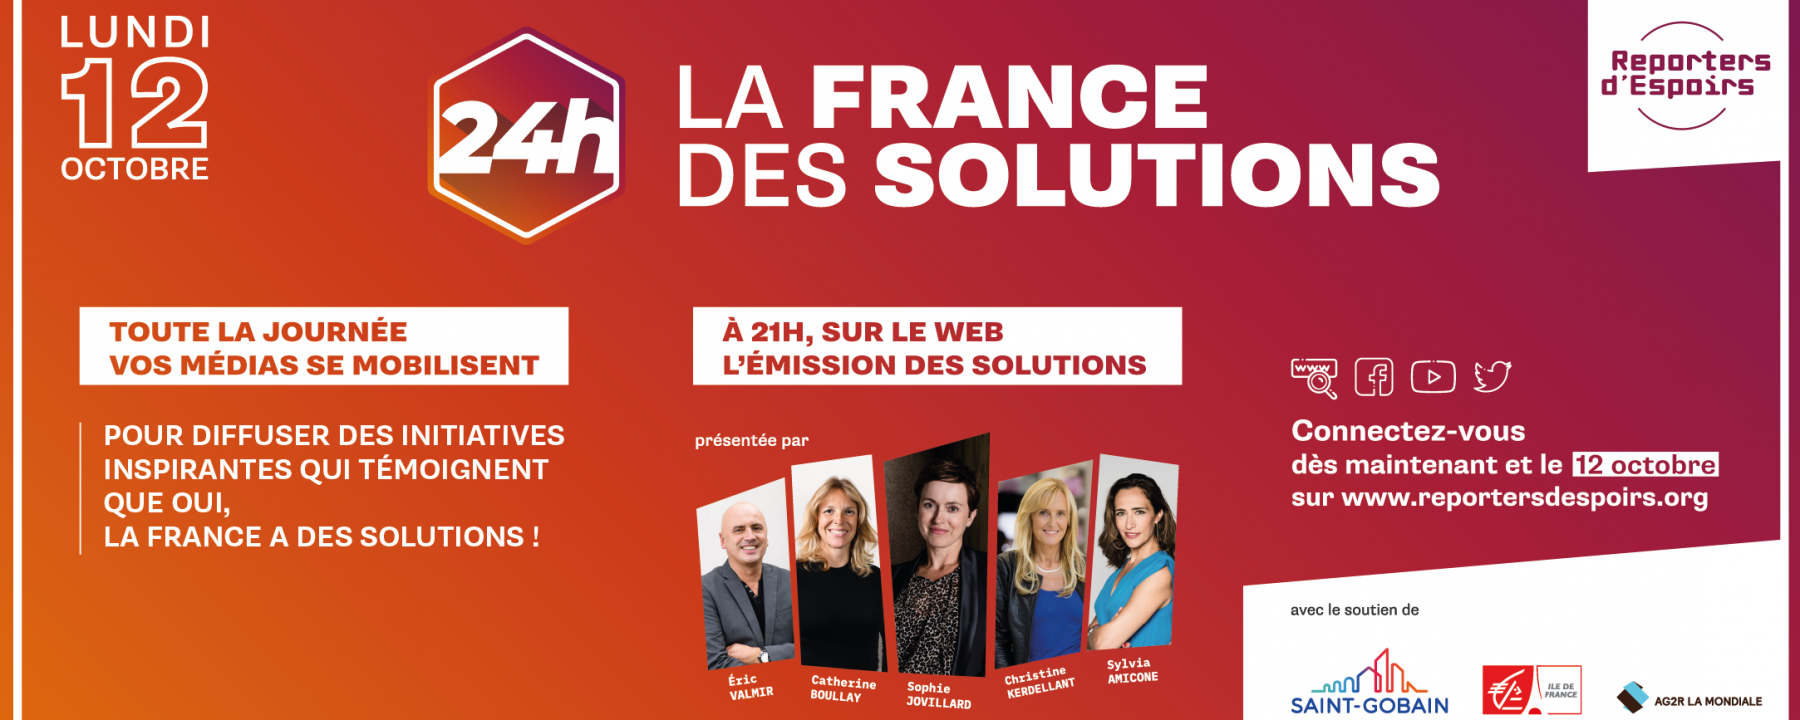 « 24h pour La France des Solutions », organisé par les Reporters d'Espoirs le 12 octobre 